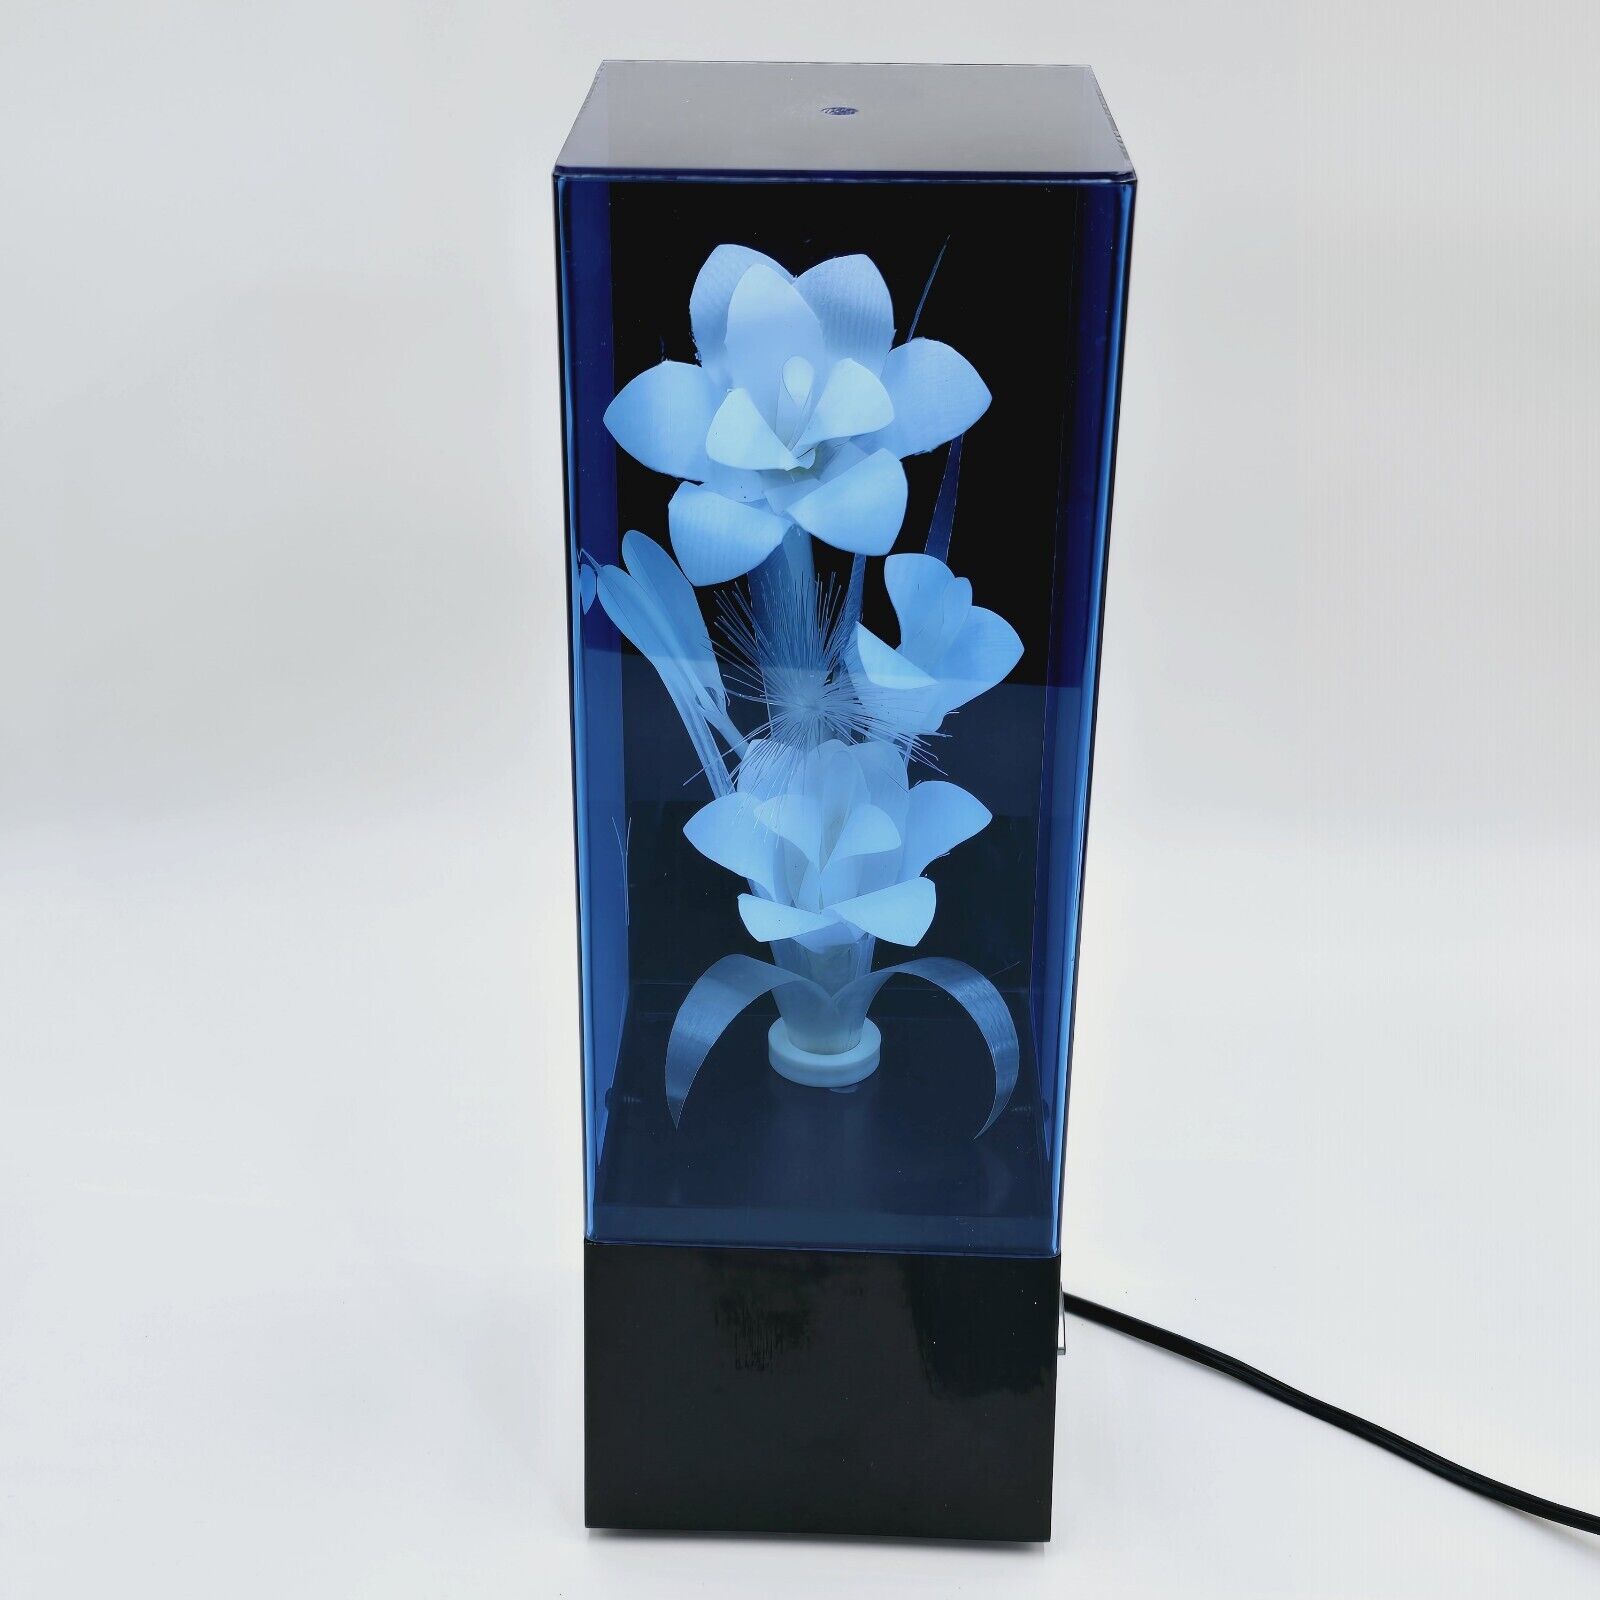 Vintage 1980’s Fiber Optic Color Changing Flower Lamp Light & Music Box Works